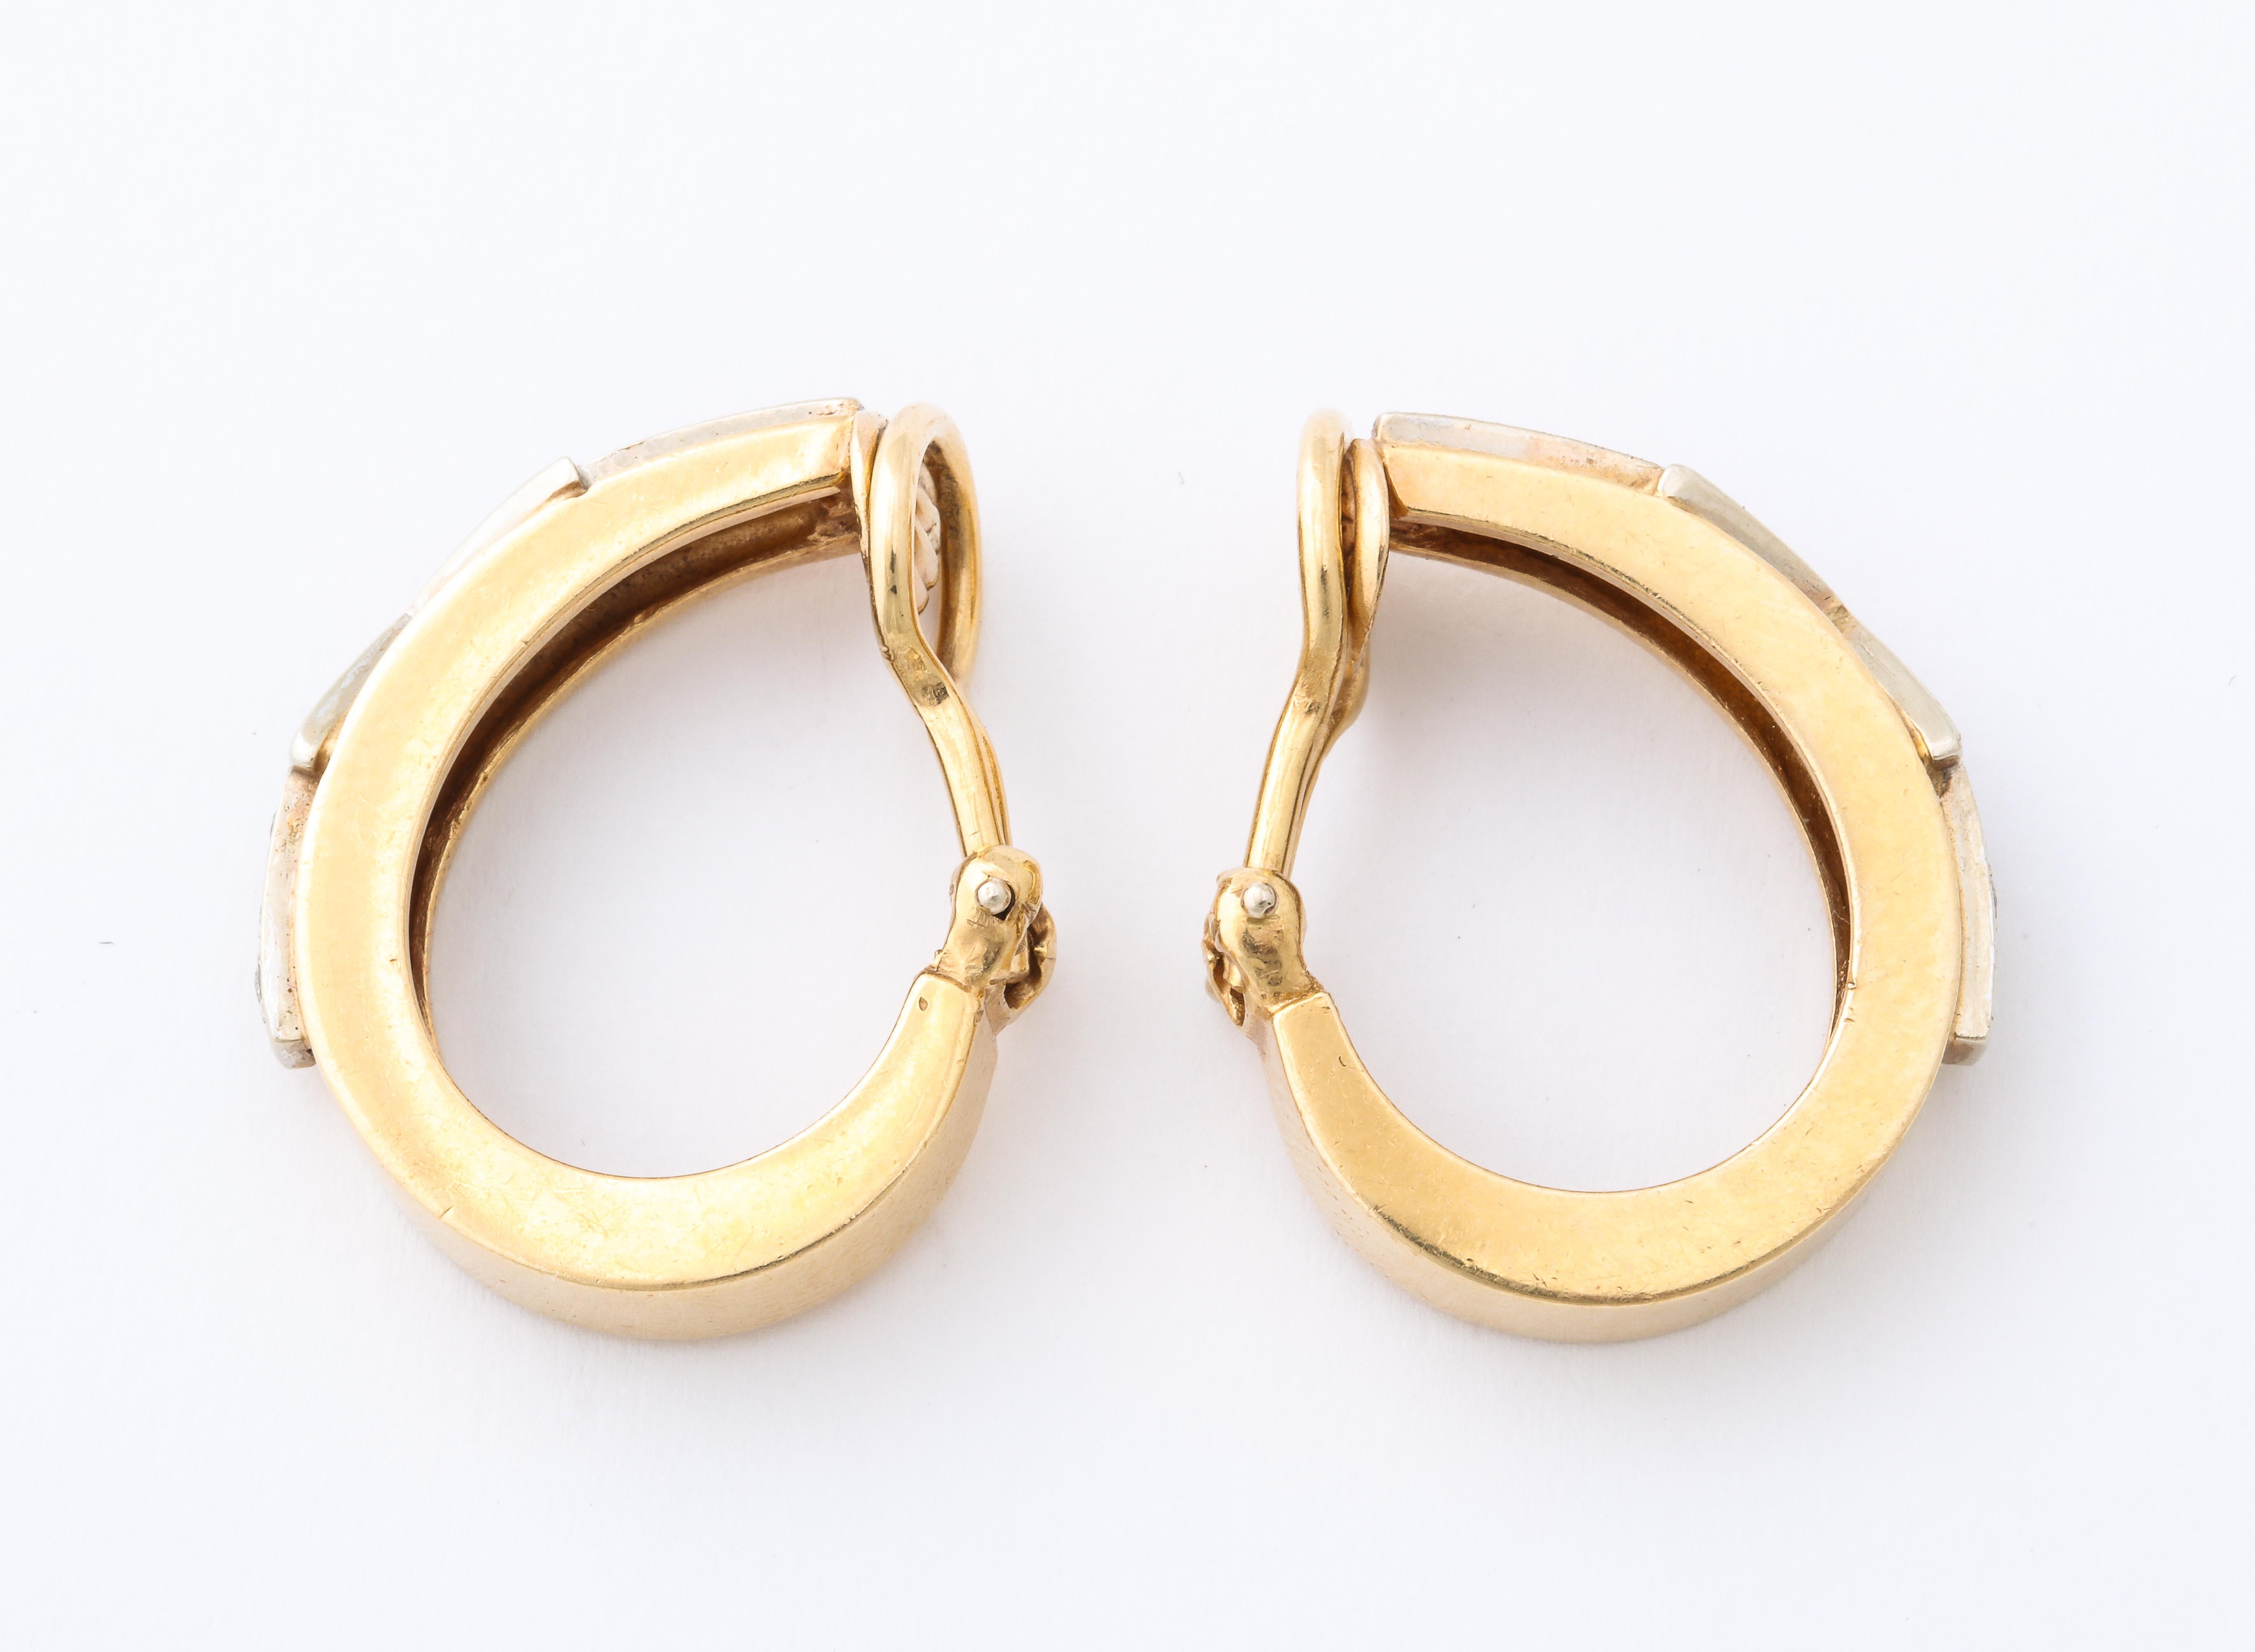 Women's Retro Arrow Design Diamond and Gold Hoop Earrings by Hammerman